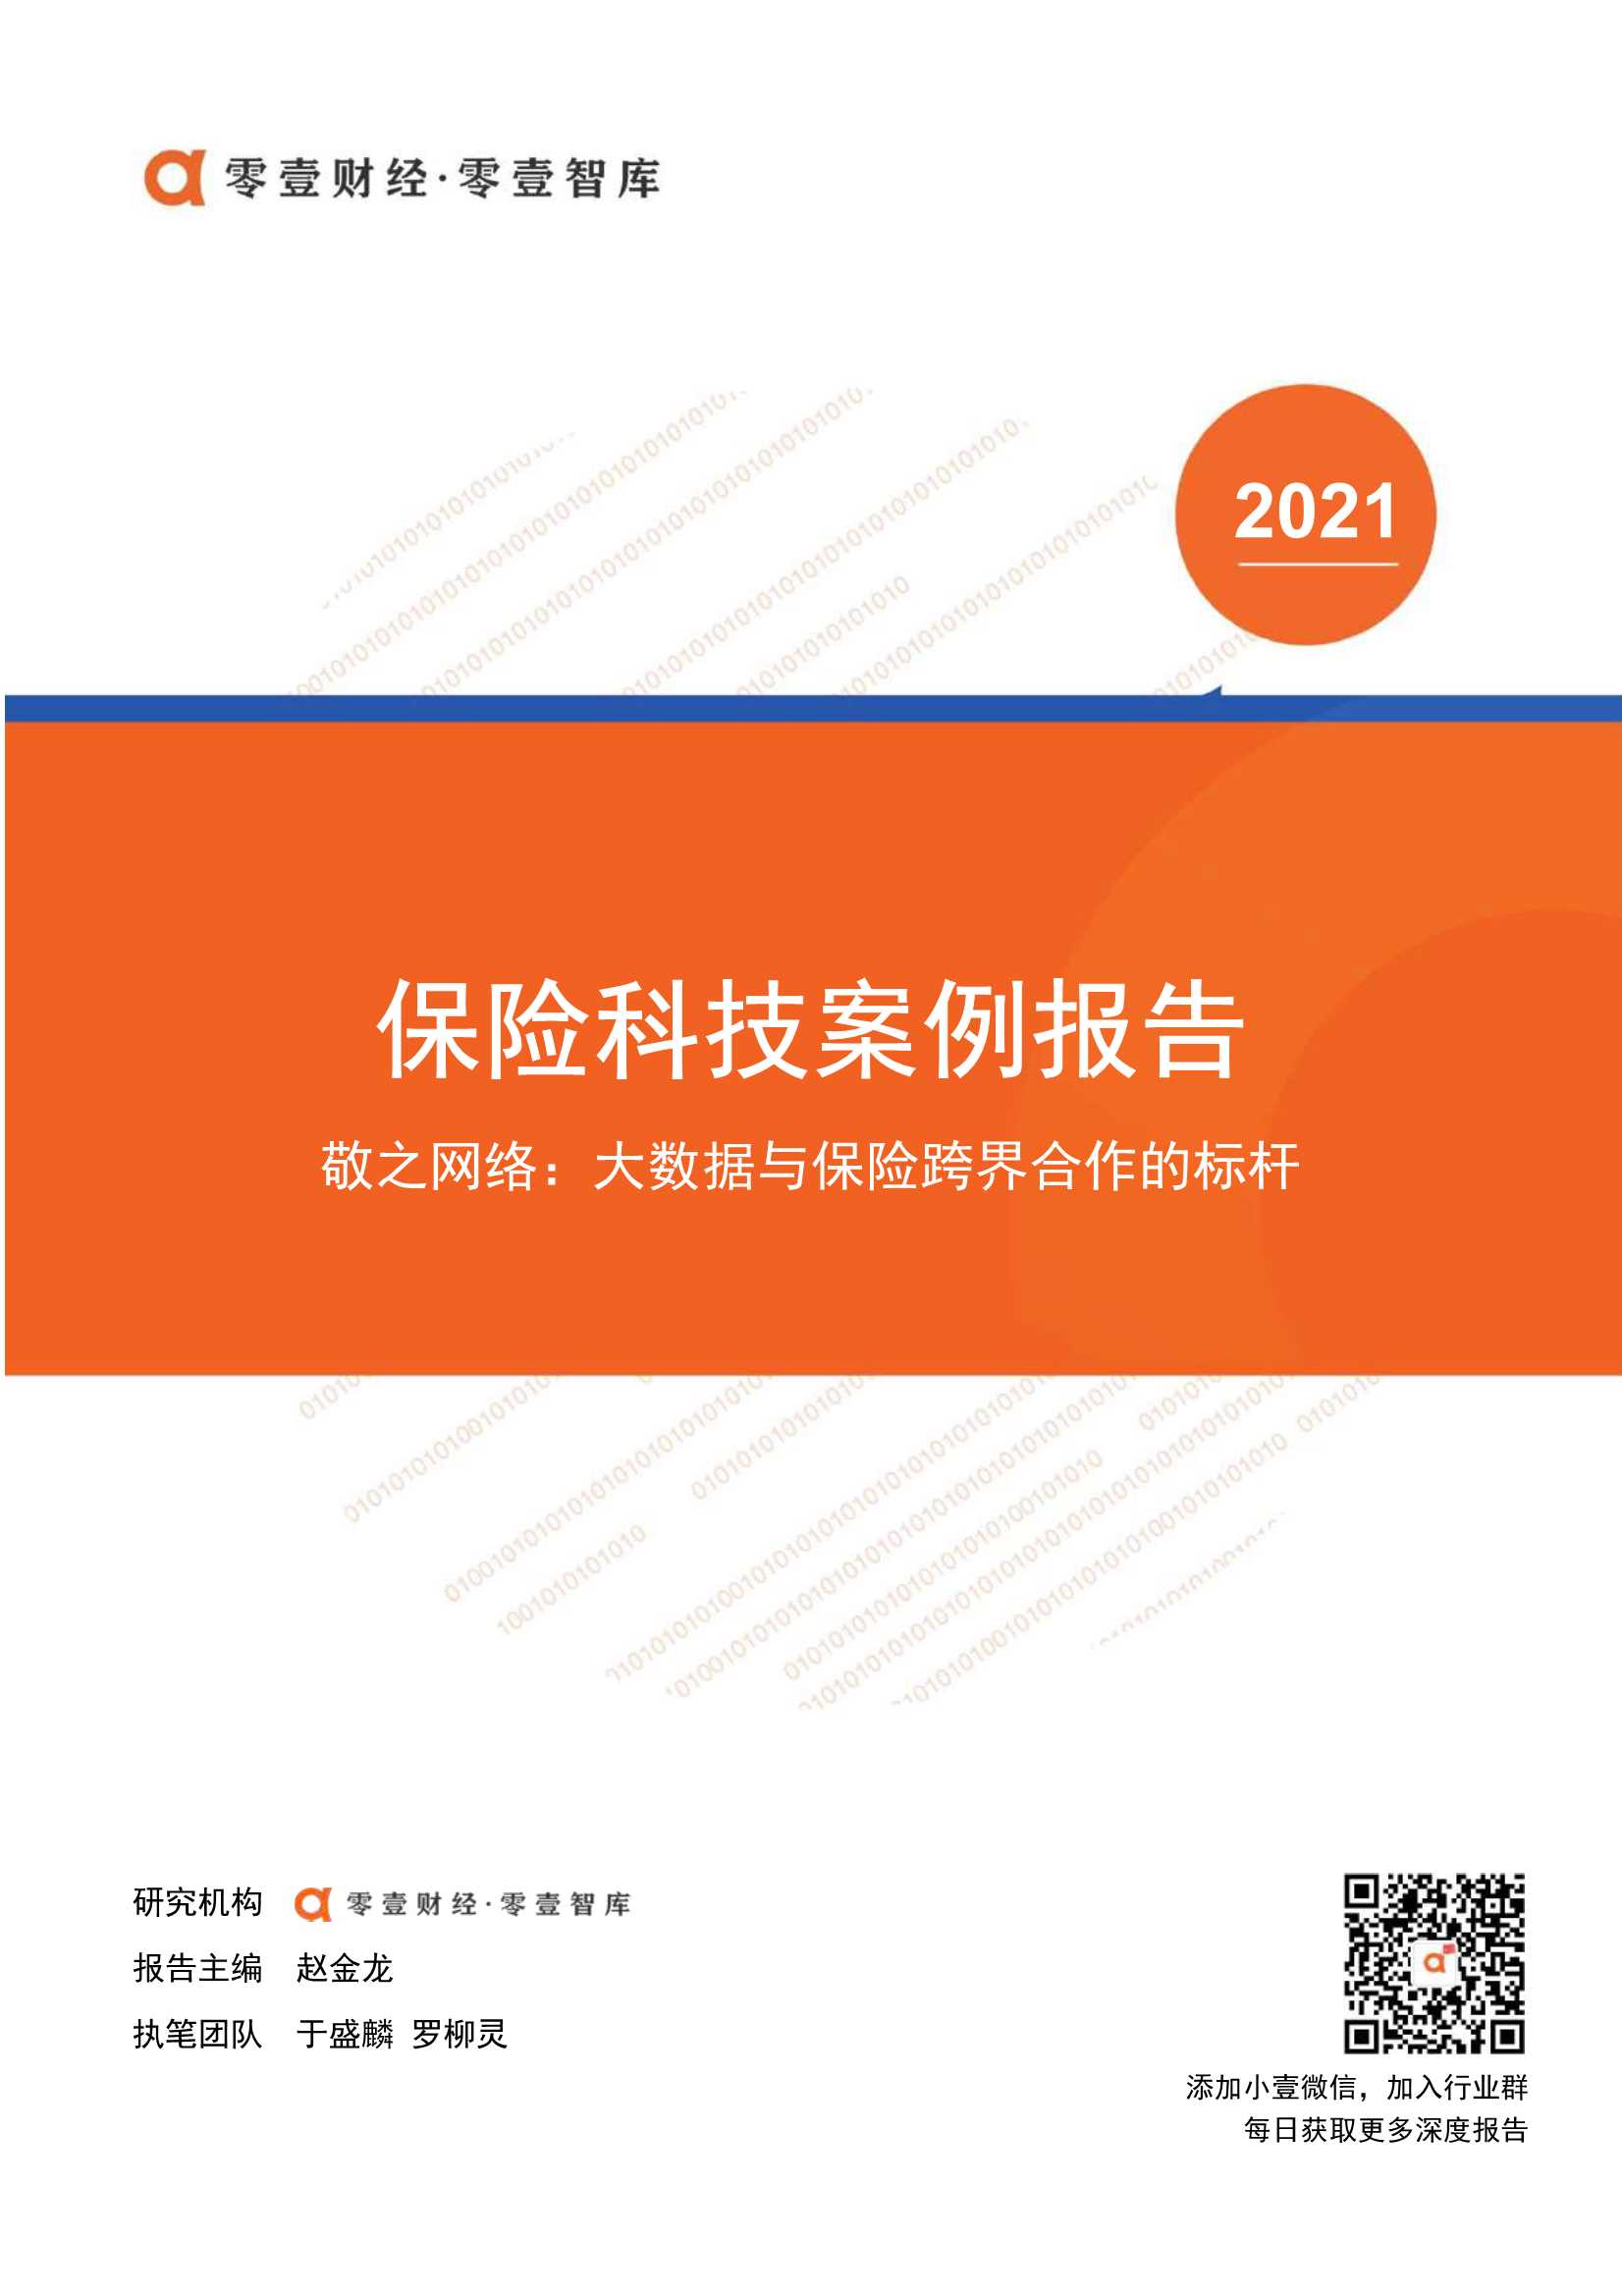 零壹智库-保险科技案例 敬之网络：大数据与保险跨界合作的标杆-2021.10-12页